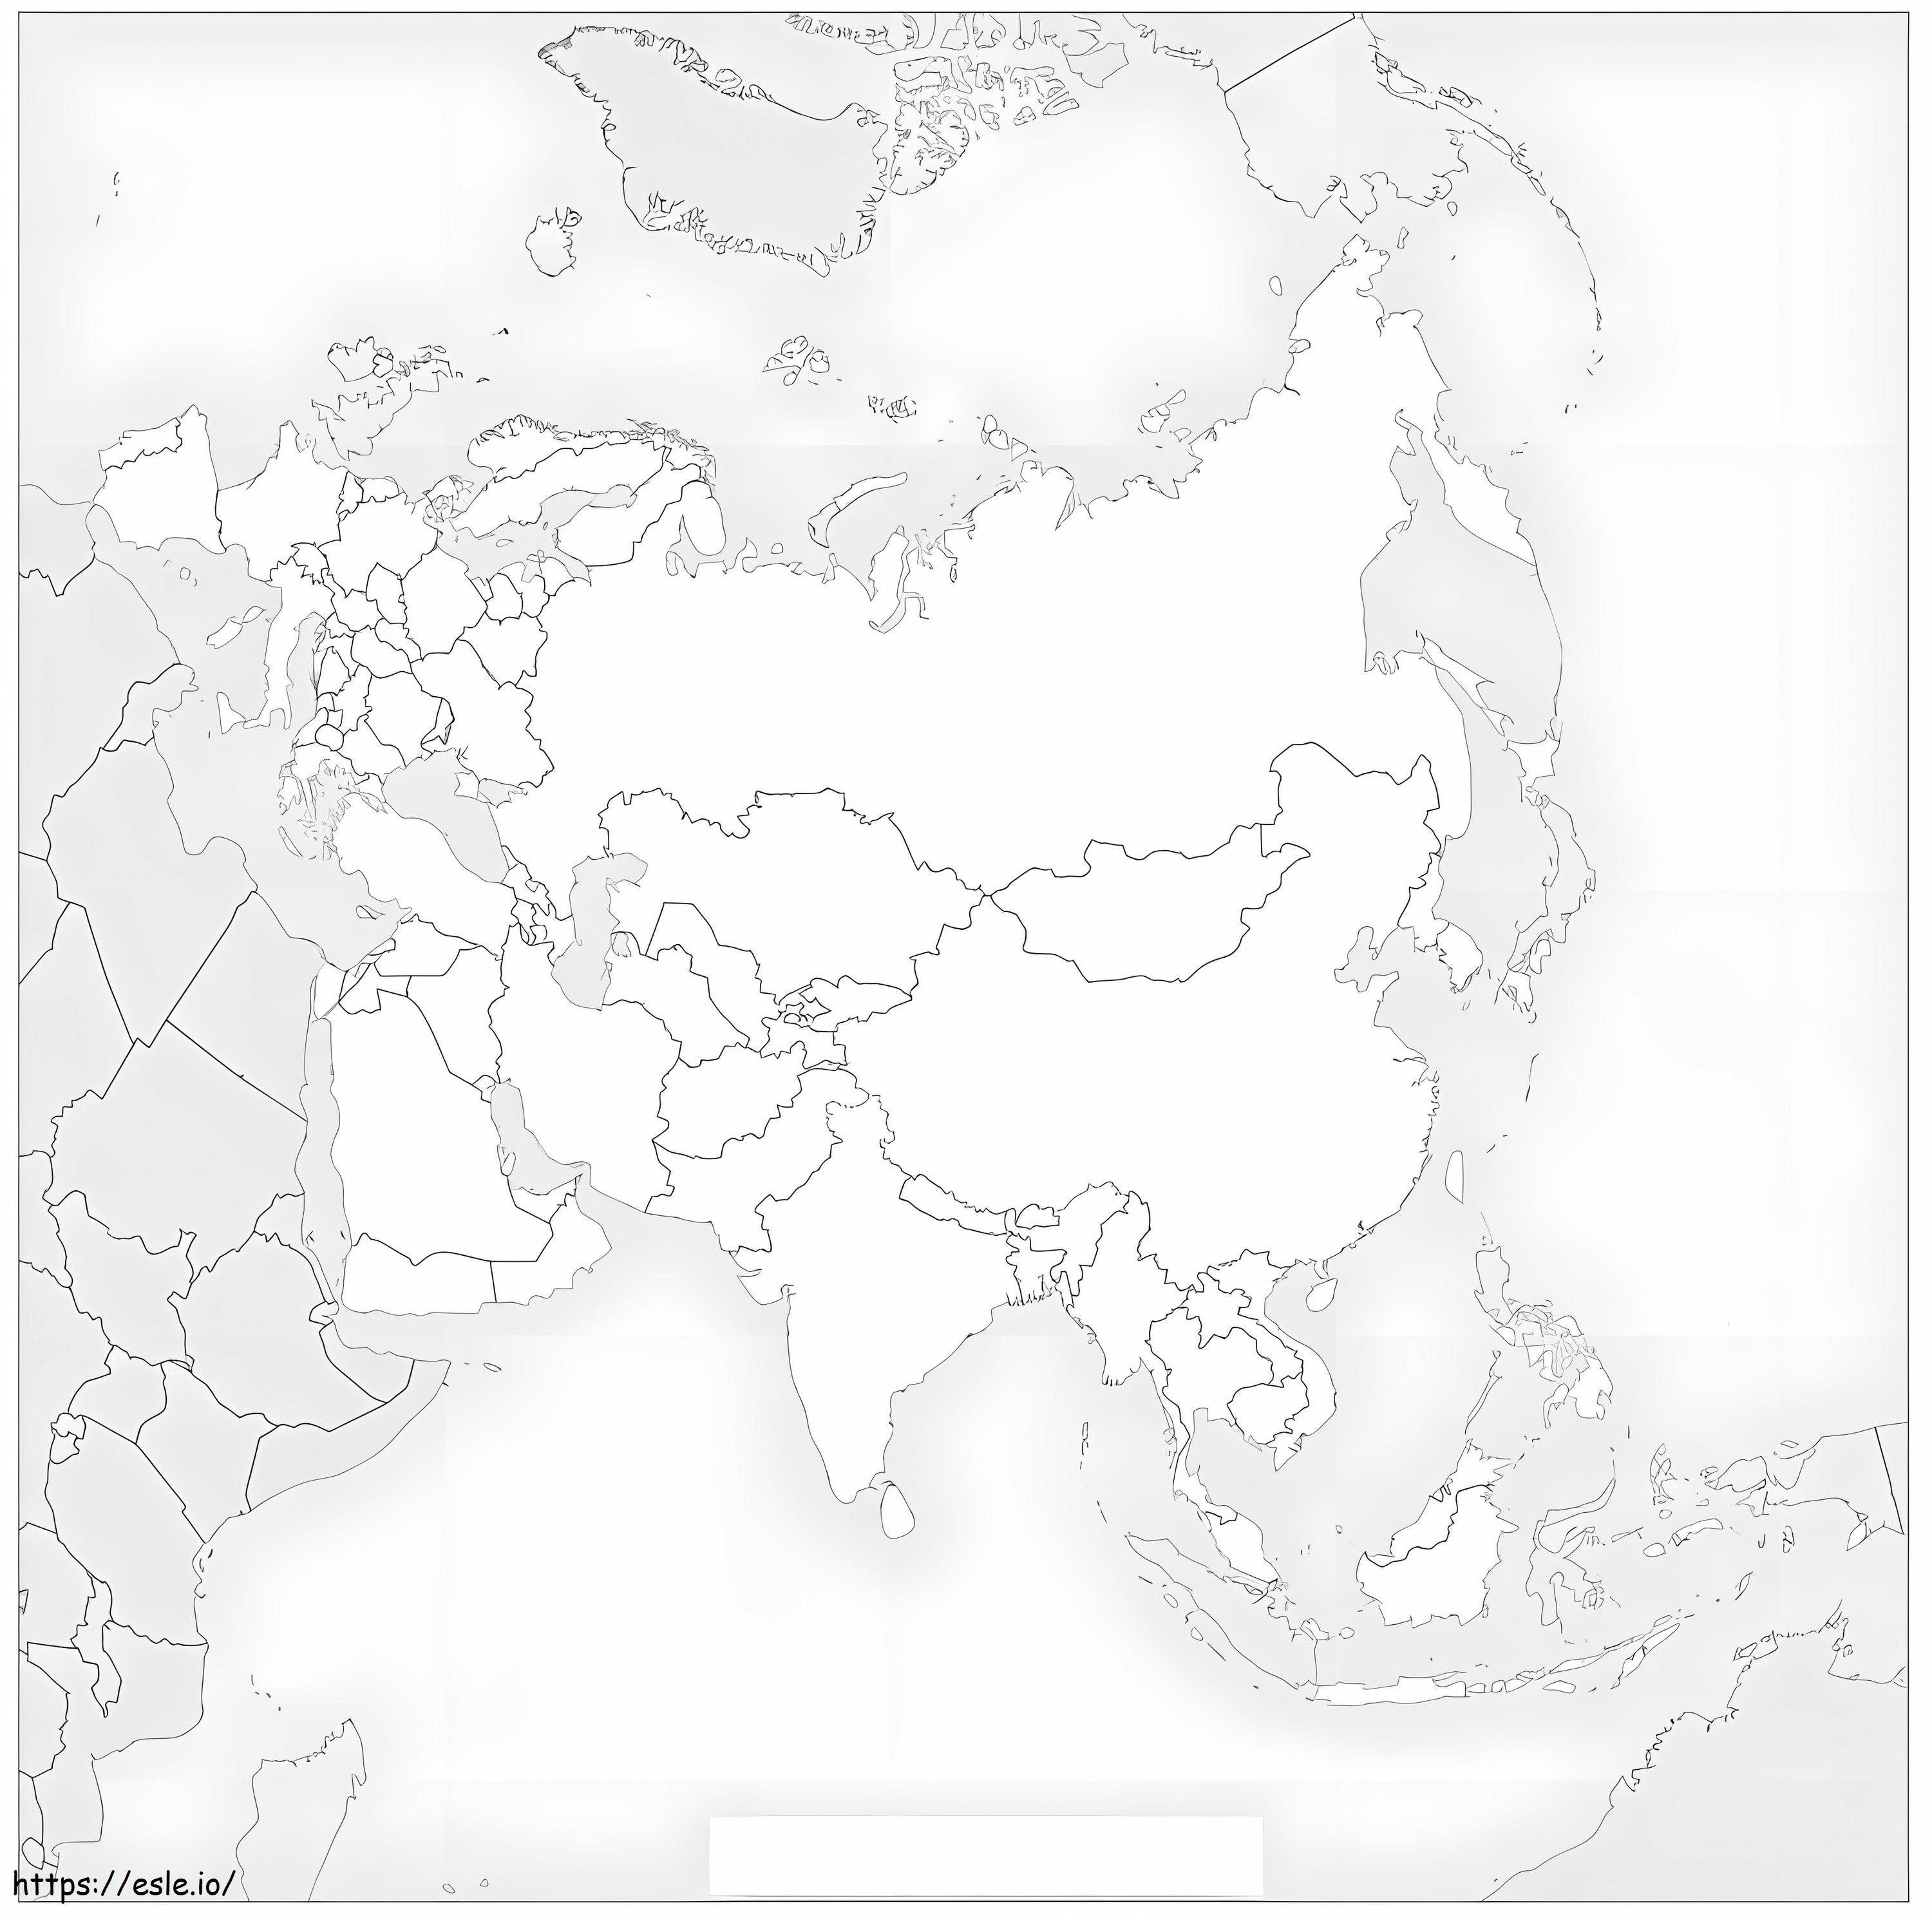 Pagina da colorare della mappa dell'Eurasia da colorare